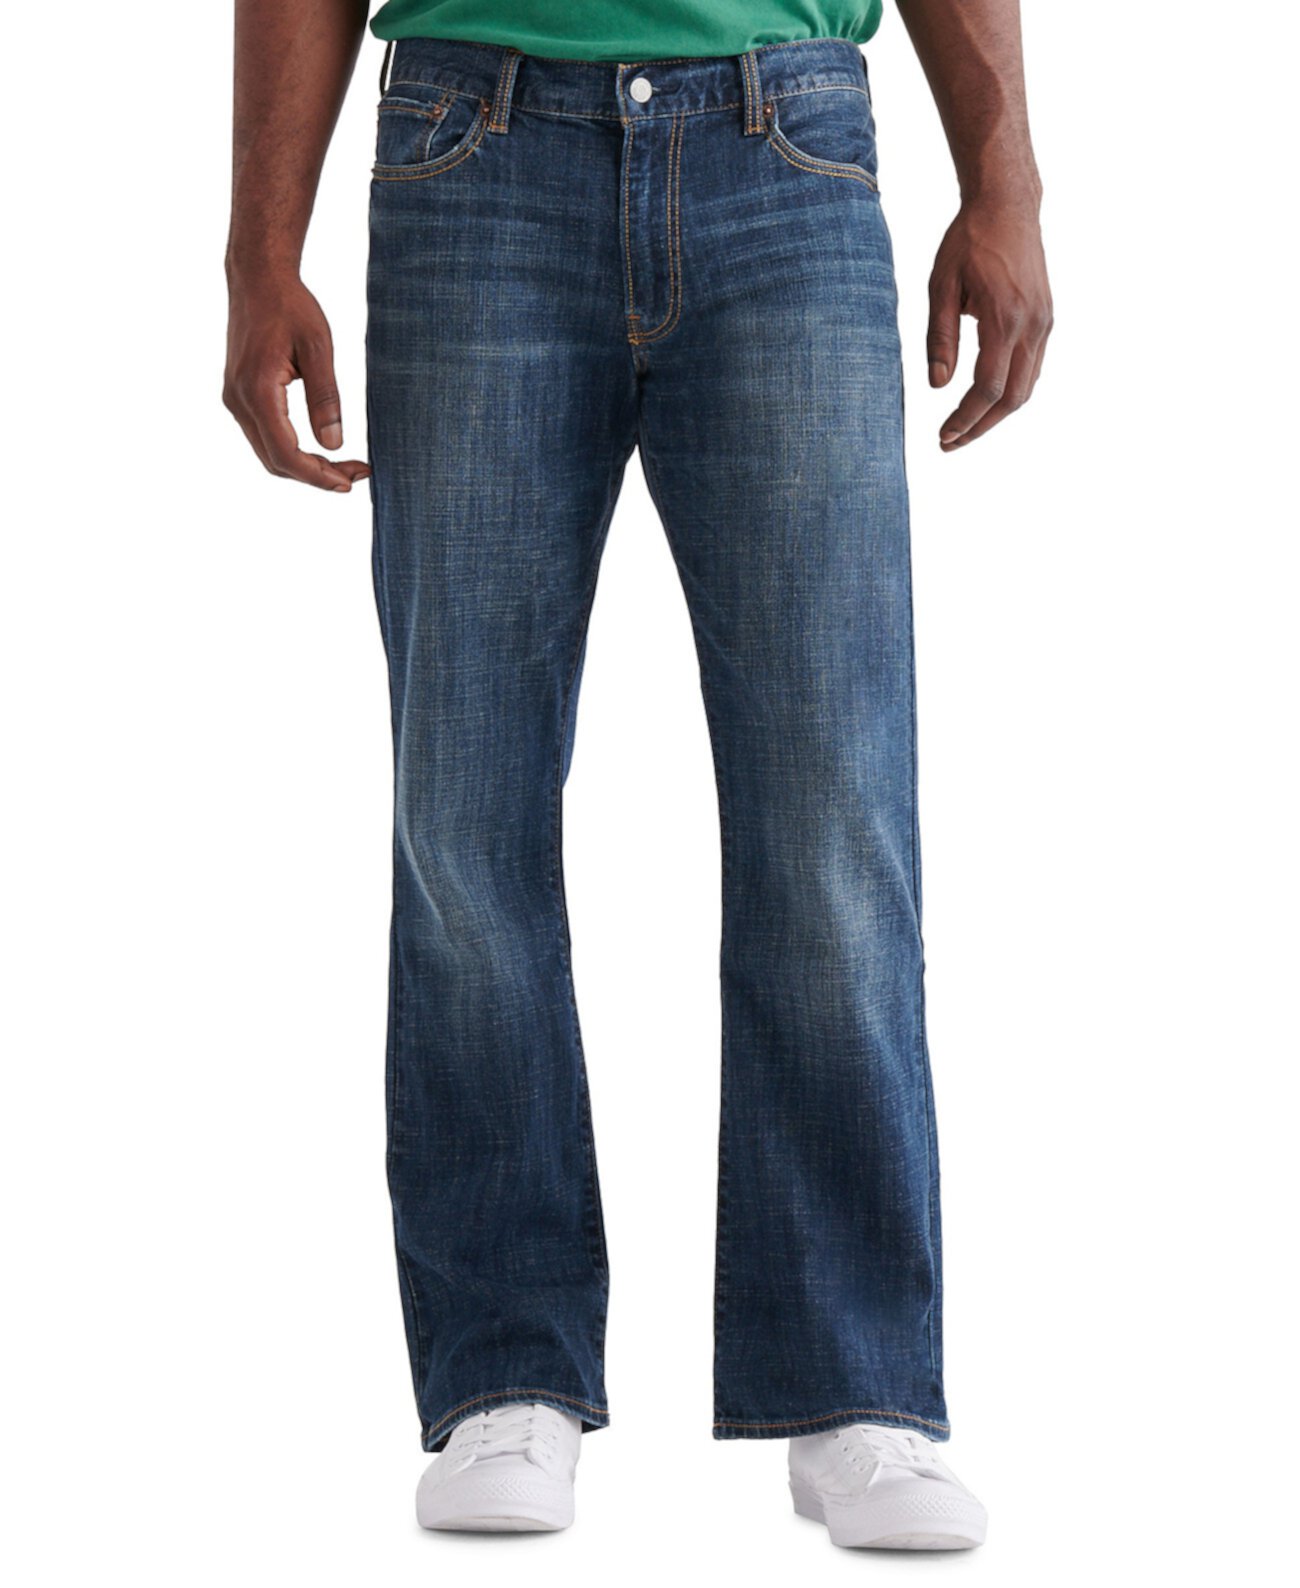 Мужские джинсы Boot Cut 367 в винтажном стиле Lucky Brand